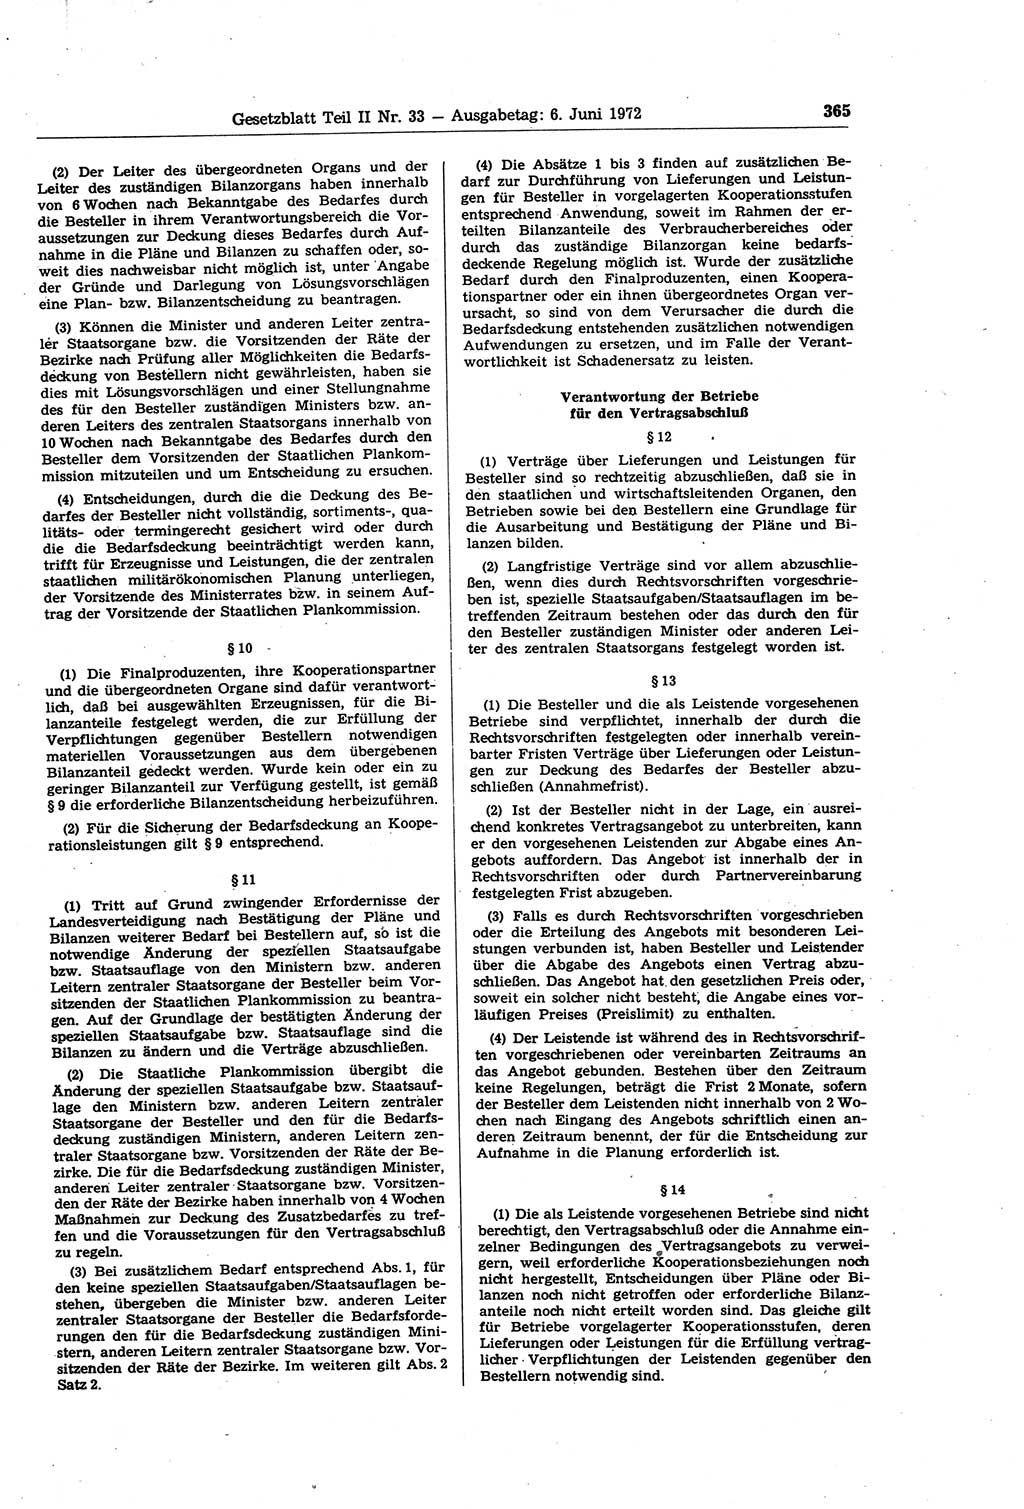 Gesetzblatt (GBl.) der Deutschen Demokratischen Republik (DDR) Teil ⅠⅠ 1972, Seite 365 (GBl. DDR ⅠⅠ 1972, S. 365)